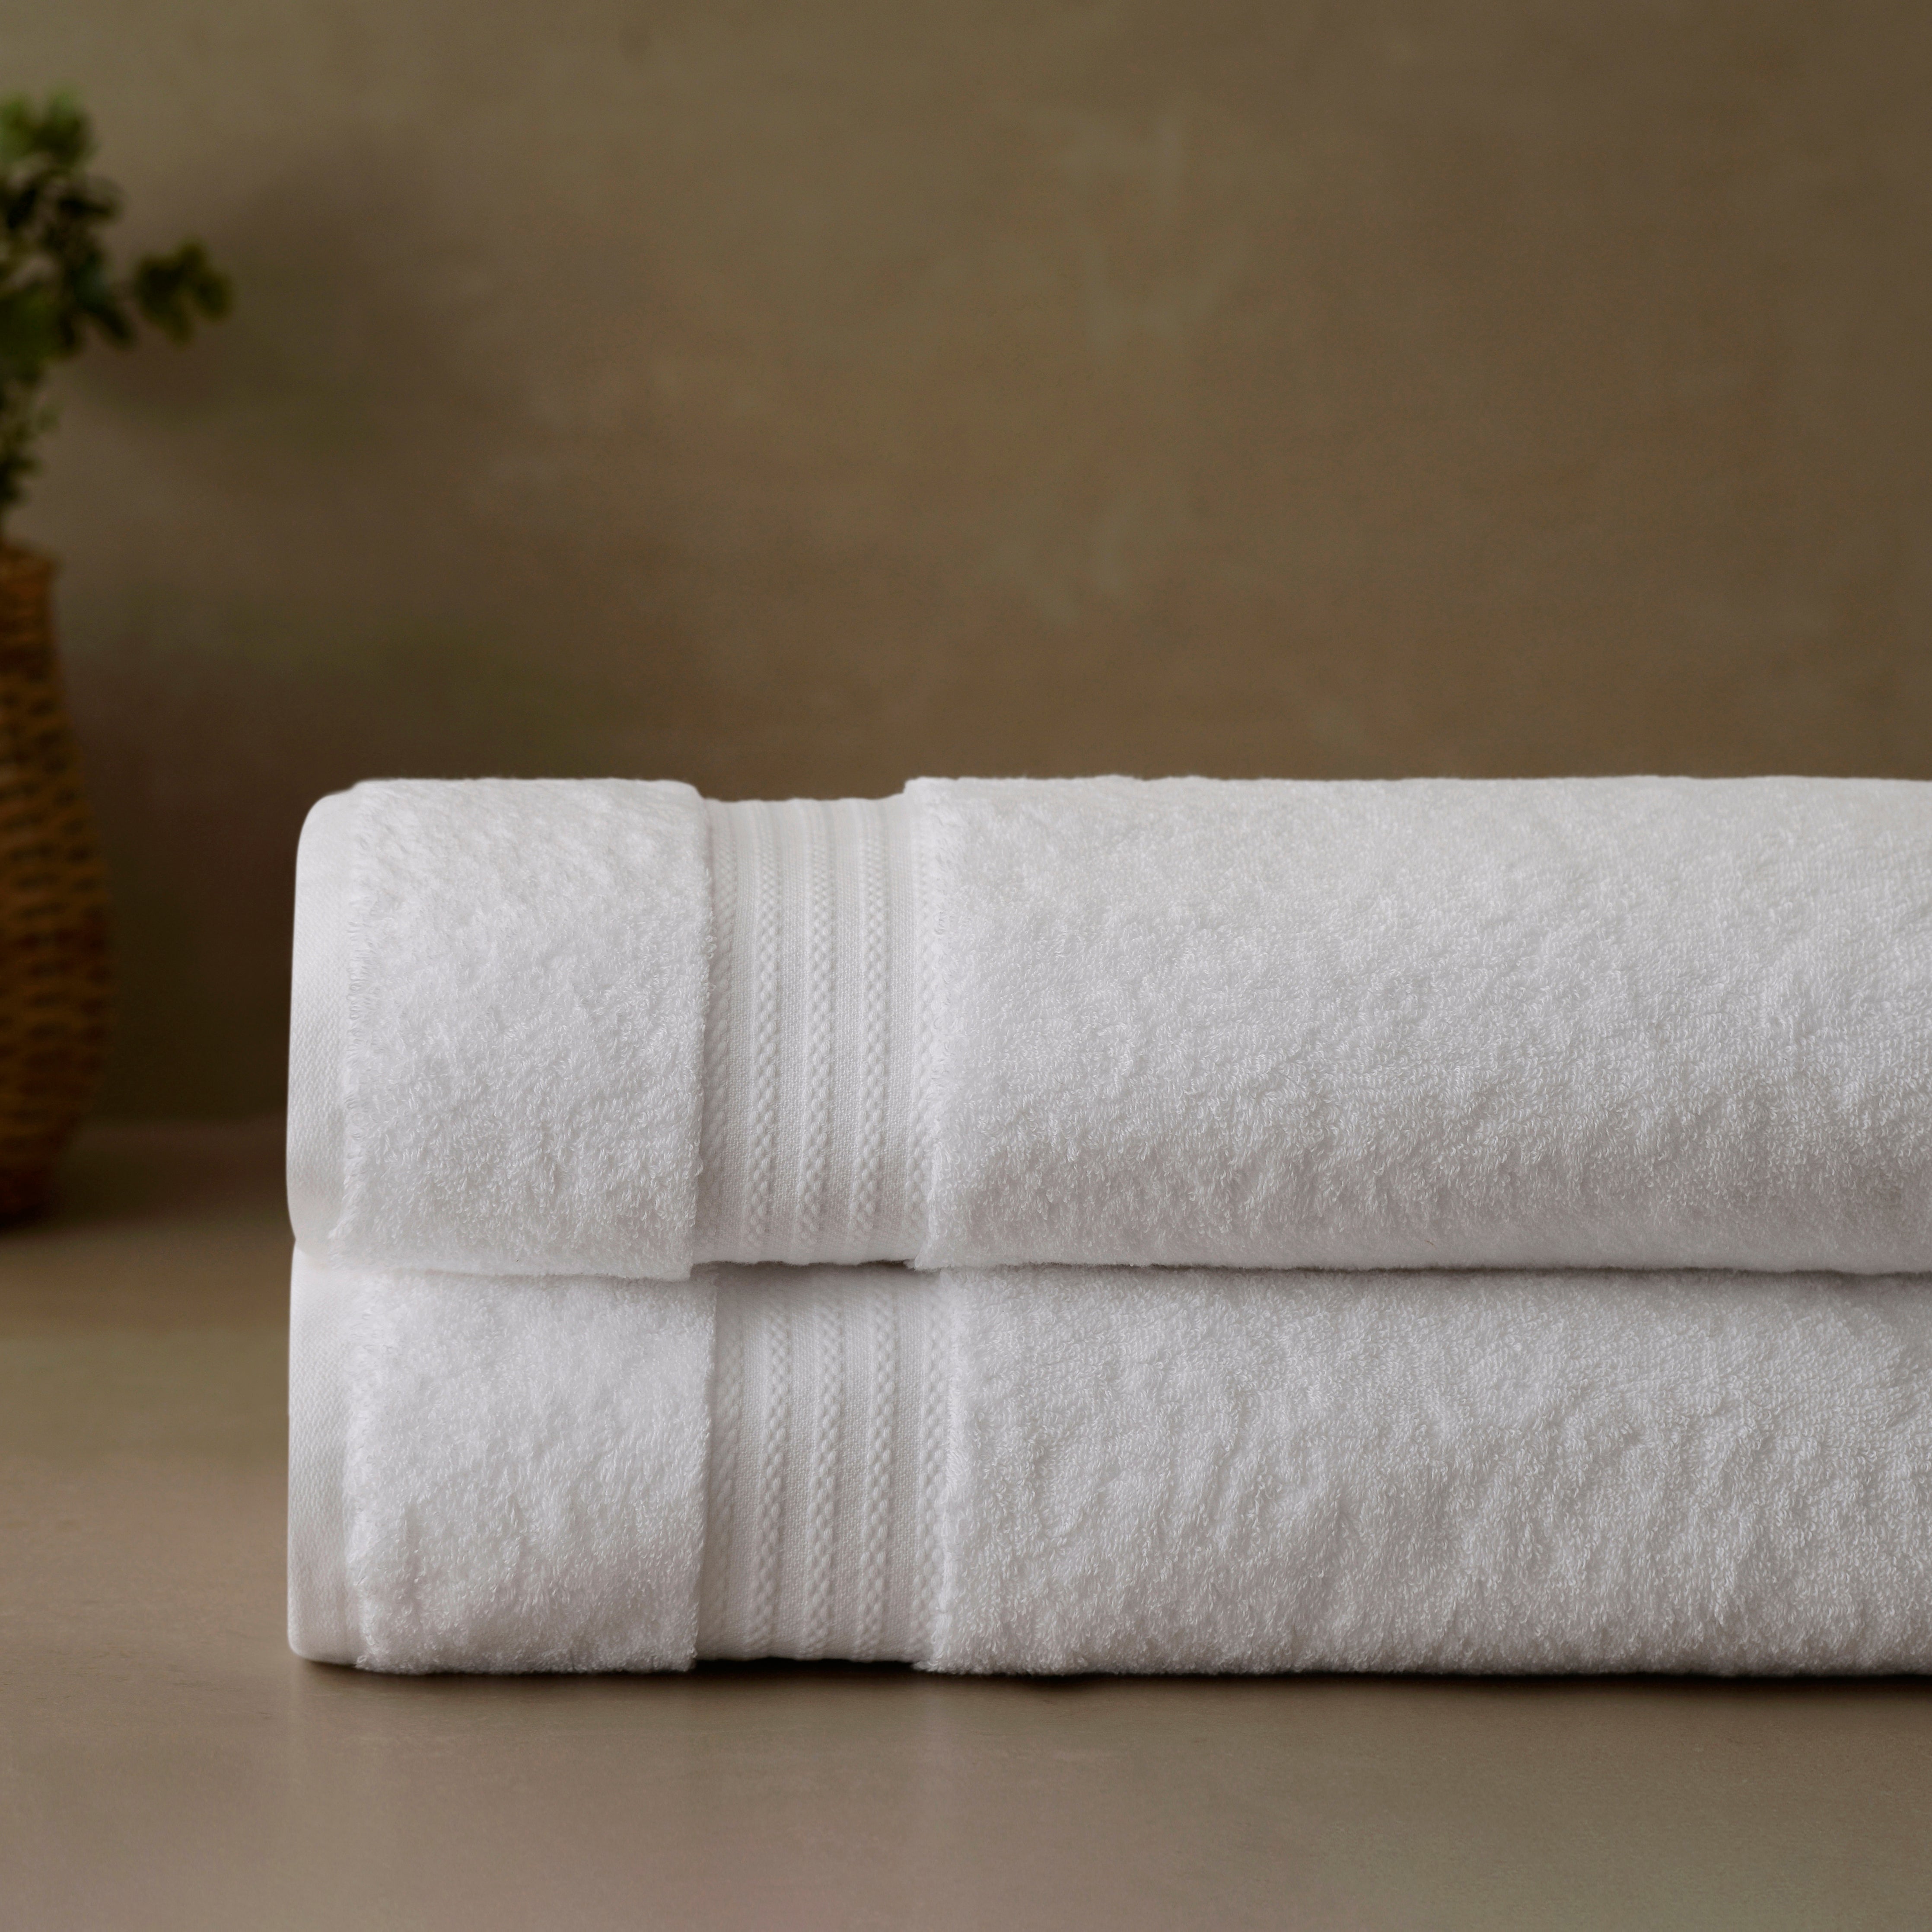 24 PACK TOWEL LUXURY 100% COTTON TOWELS SET SUPER SOFT FACE HAND BATH SHEET